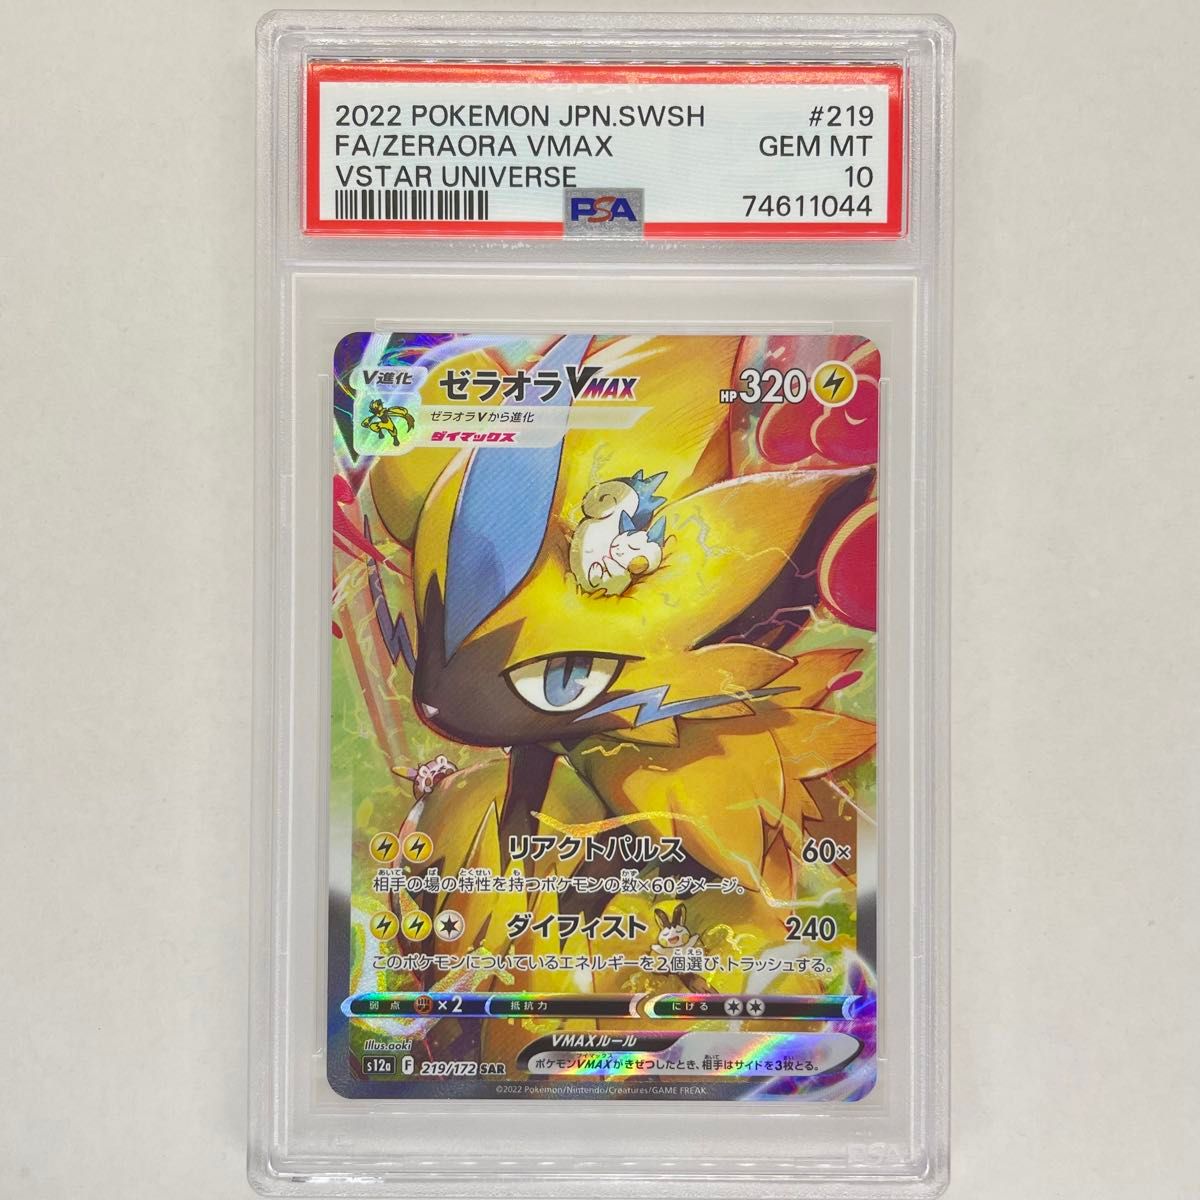 ゼラオラVMAX SAR PSA10 キラ ホロ ポケモンカード 鑑定品  pokemon card Japanese